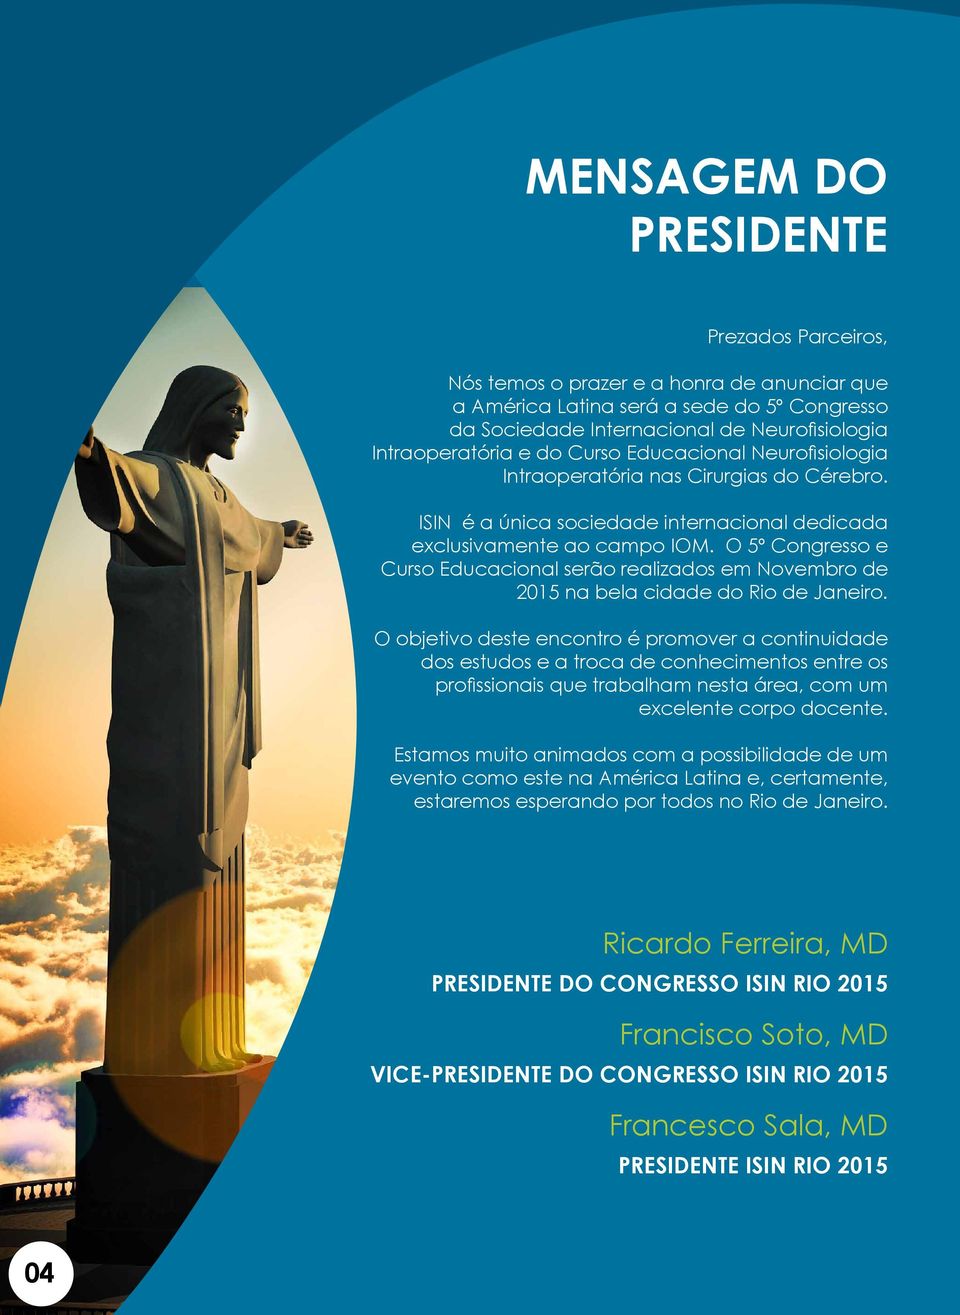 O 5º Congresso e Curso Educacional serão realizados em Novembro de 2015 na bela cidade do Rio de Janeiro.